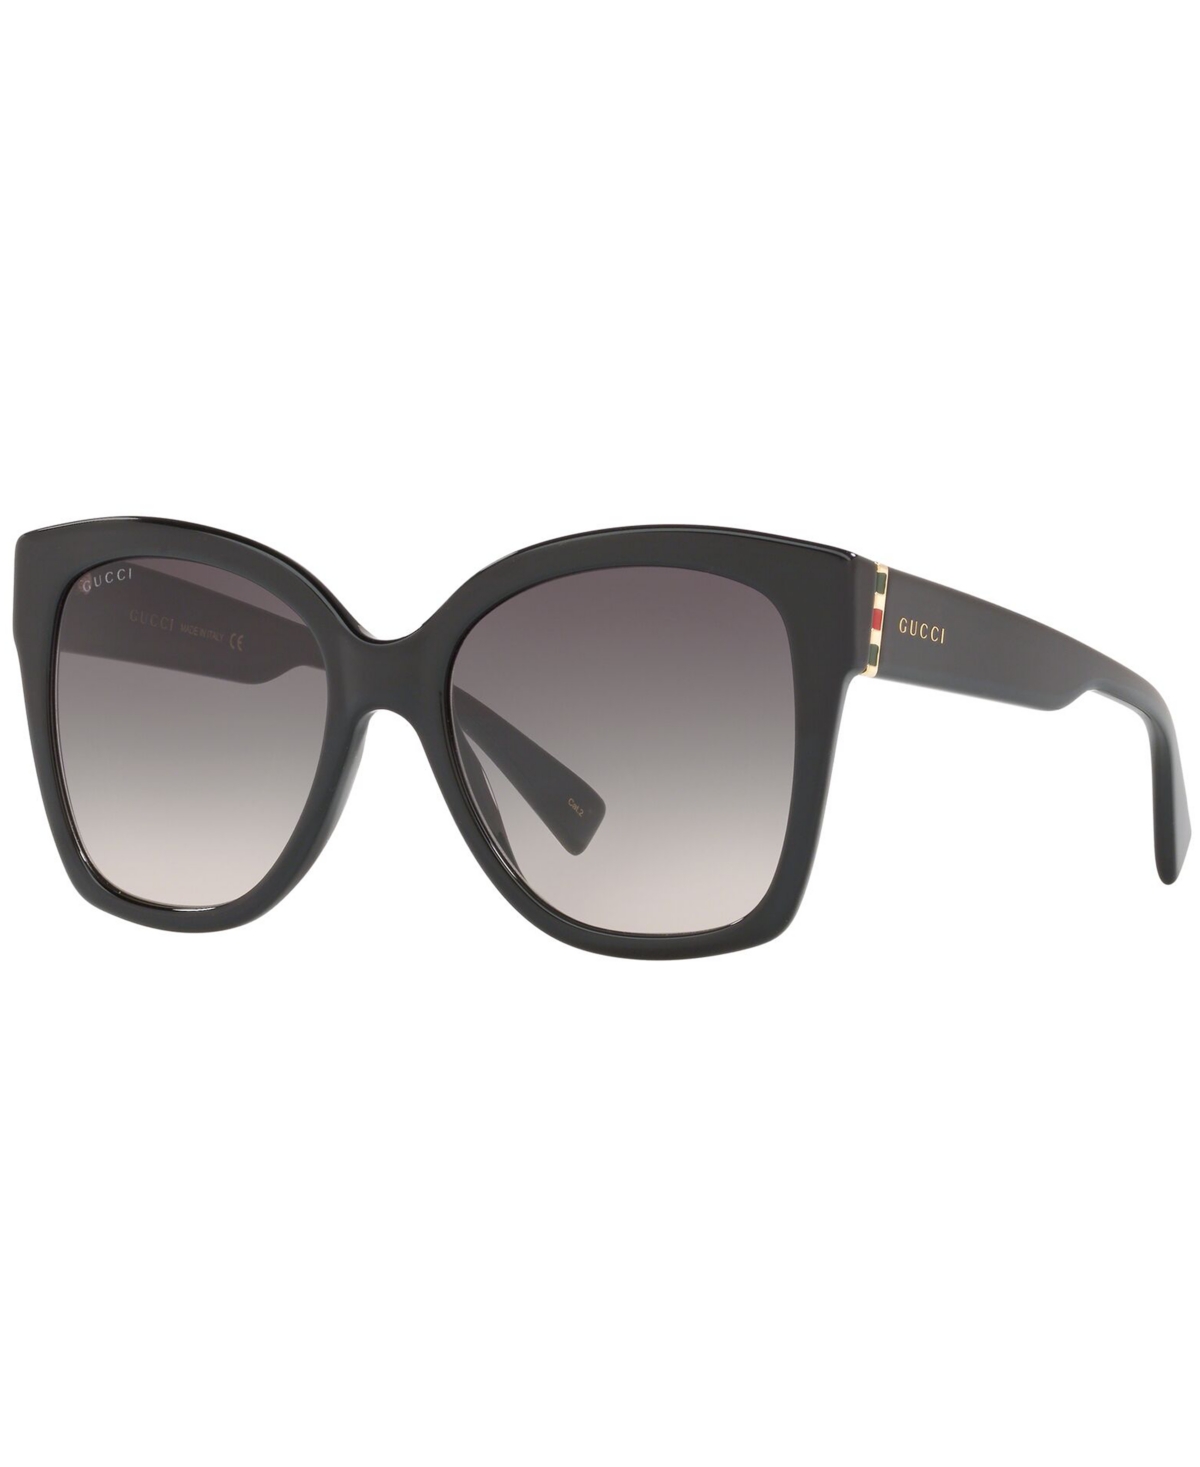 Gucci Sunglasses, Gg0459s In Black Shiny,grey